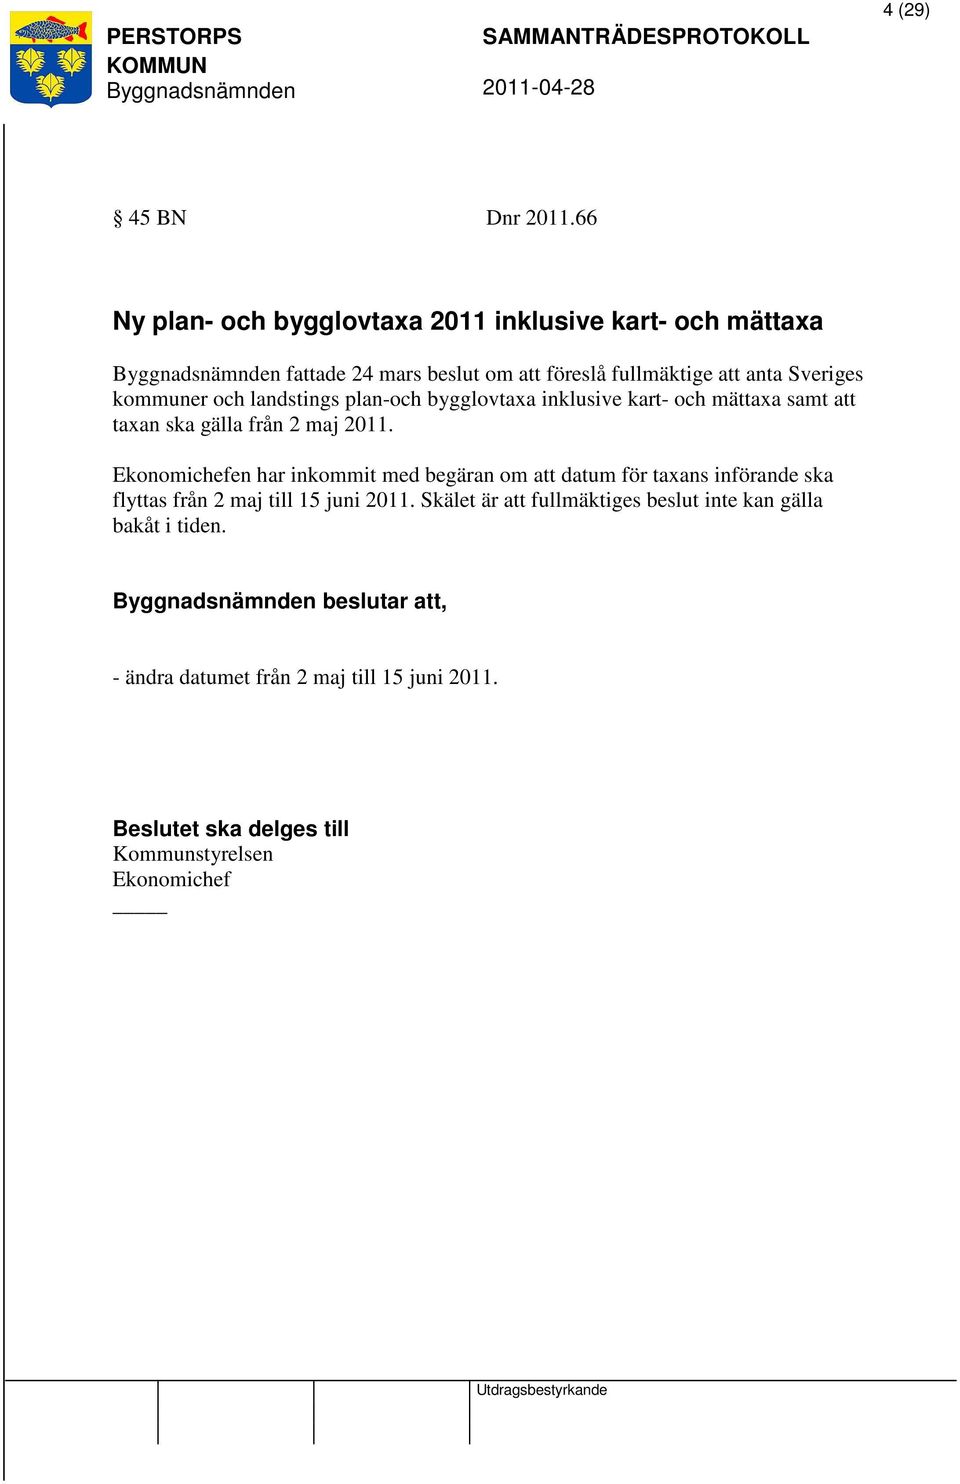 och landstings plan-och bygglovtaxa inklusive kart- och mättaxa samt att taxan ska gälla från 2 maj 2011.